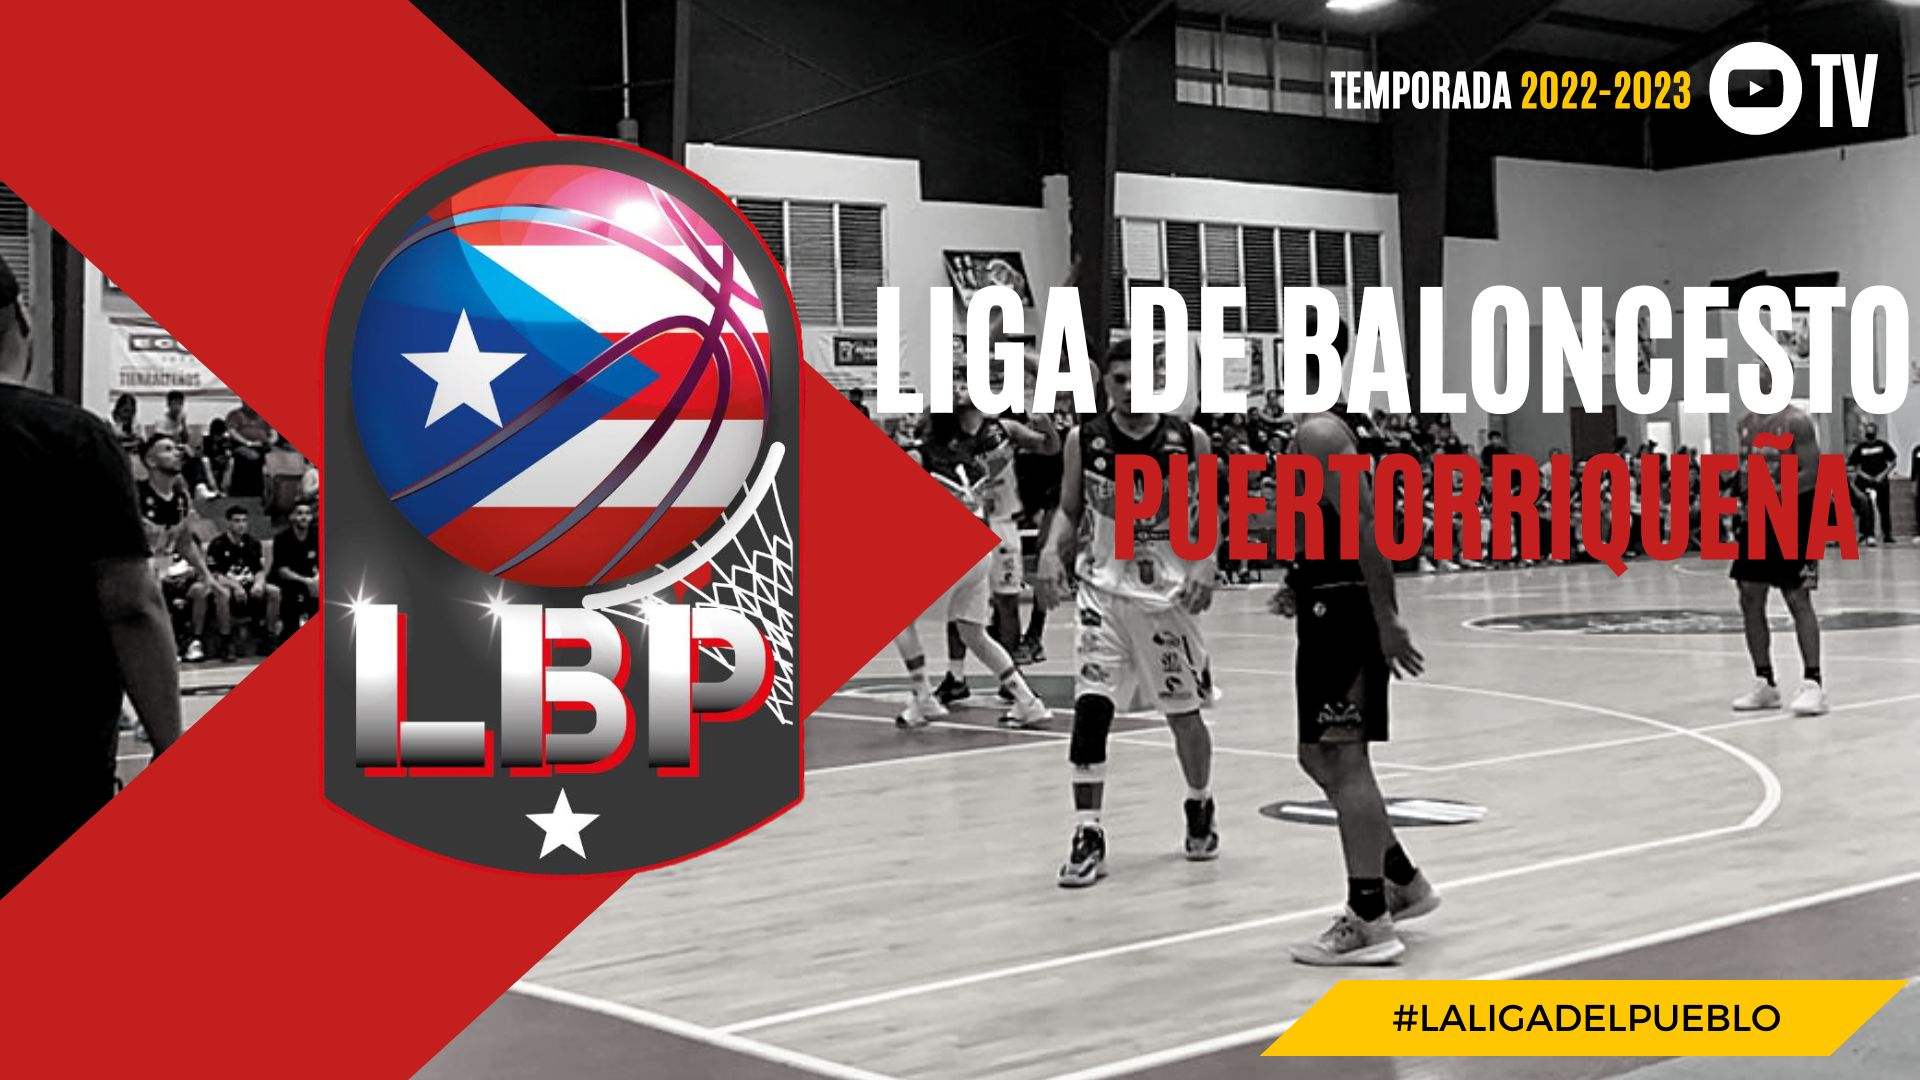 Resultado Liga de Baloncesto Puertorriqueña: miércoles, 28 de diciembre